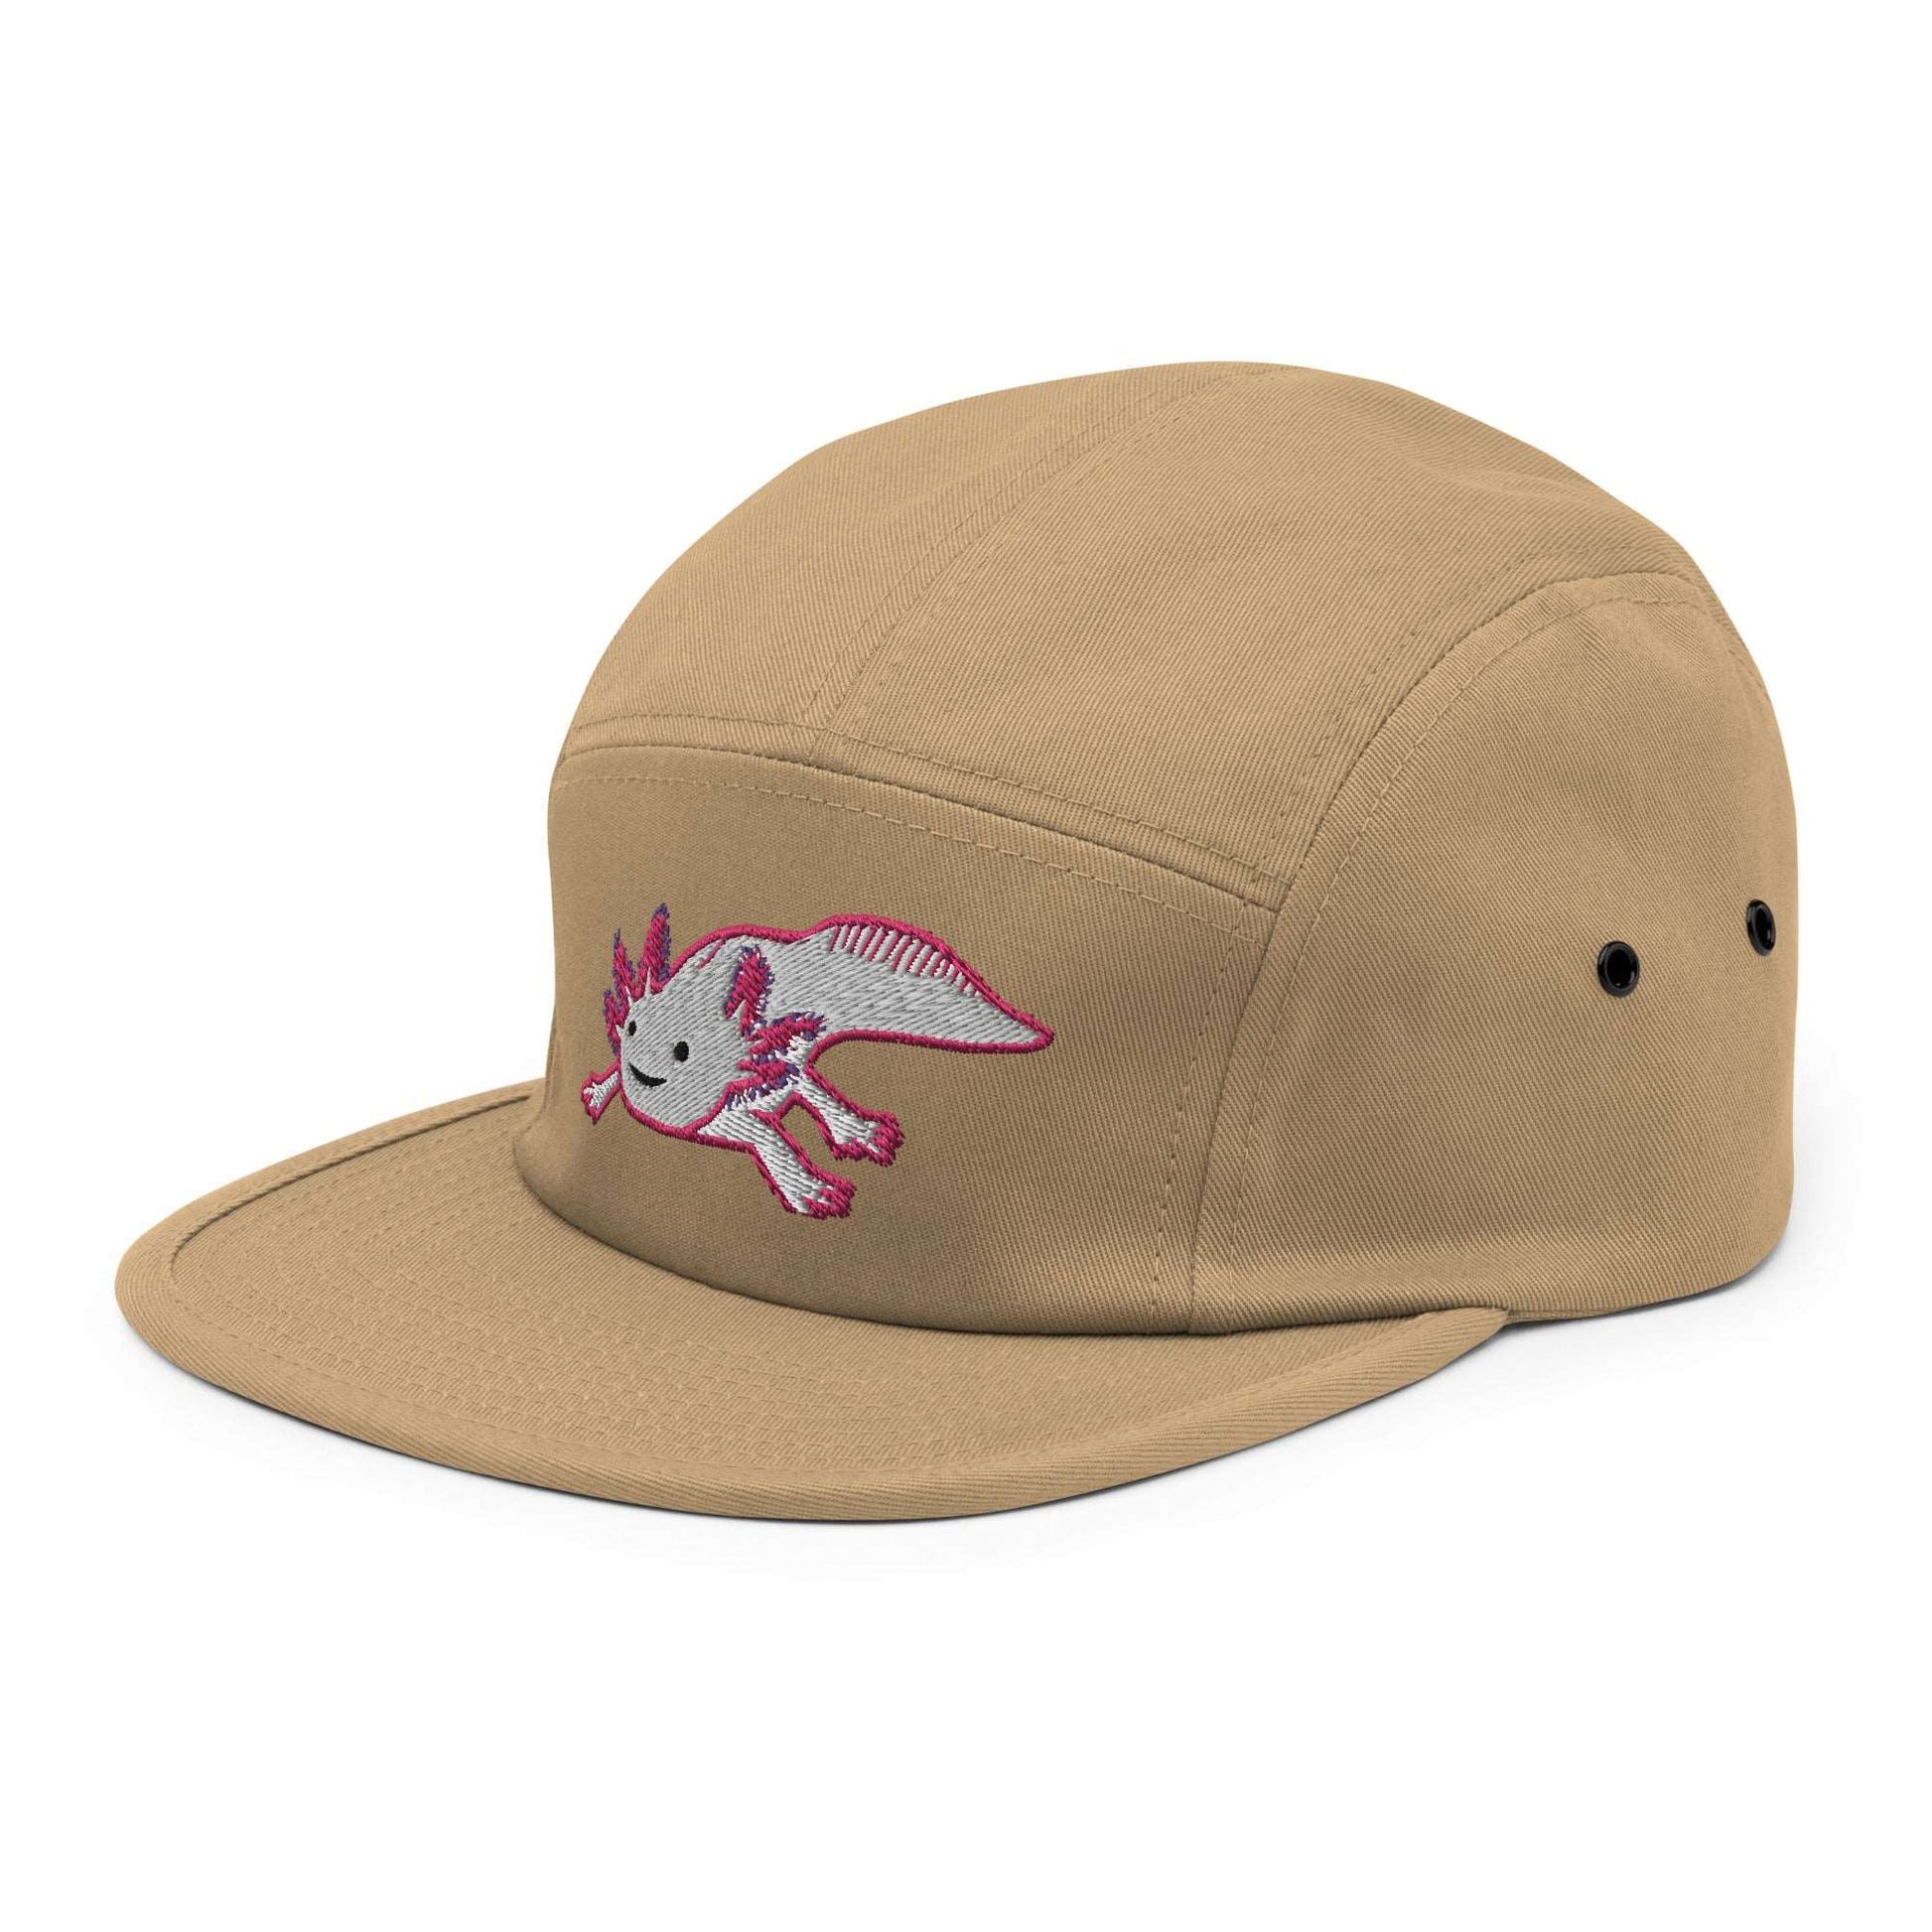 Axolotl Hat